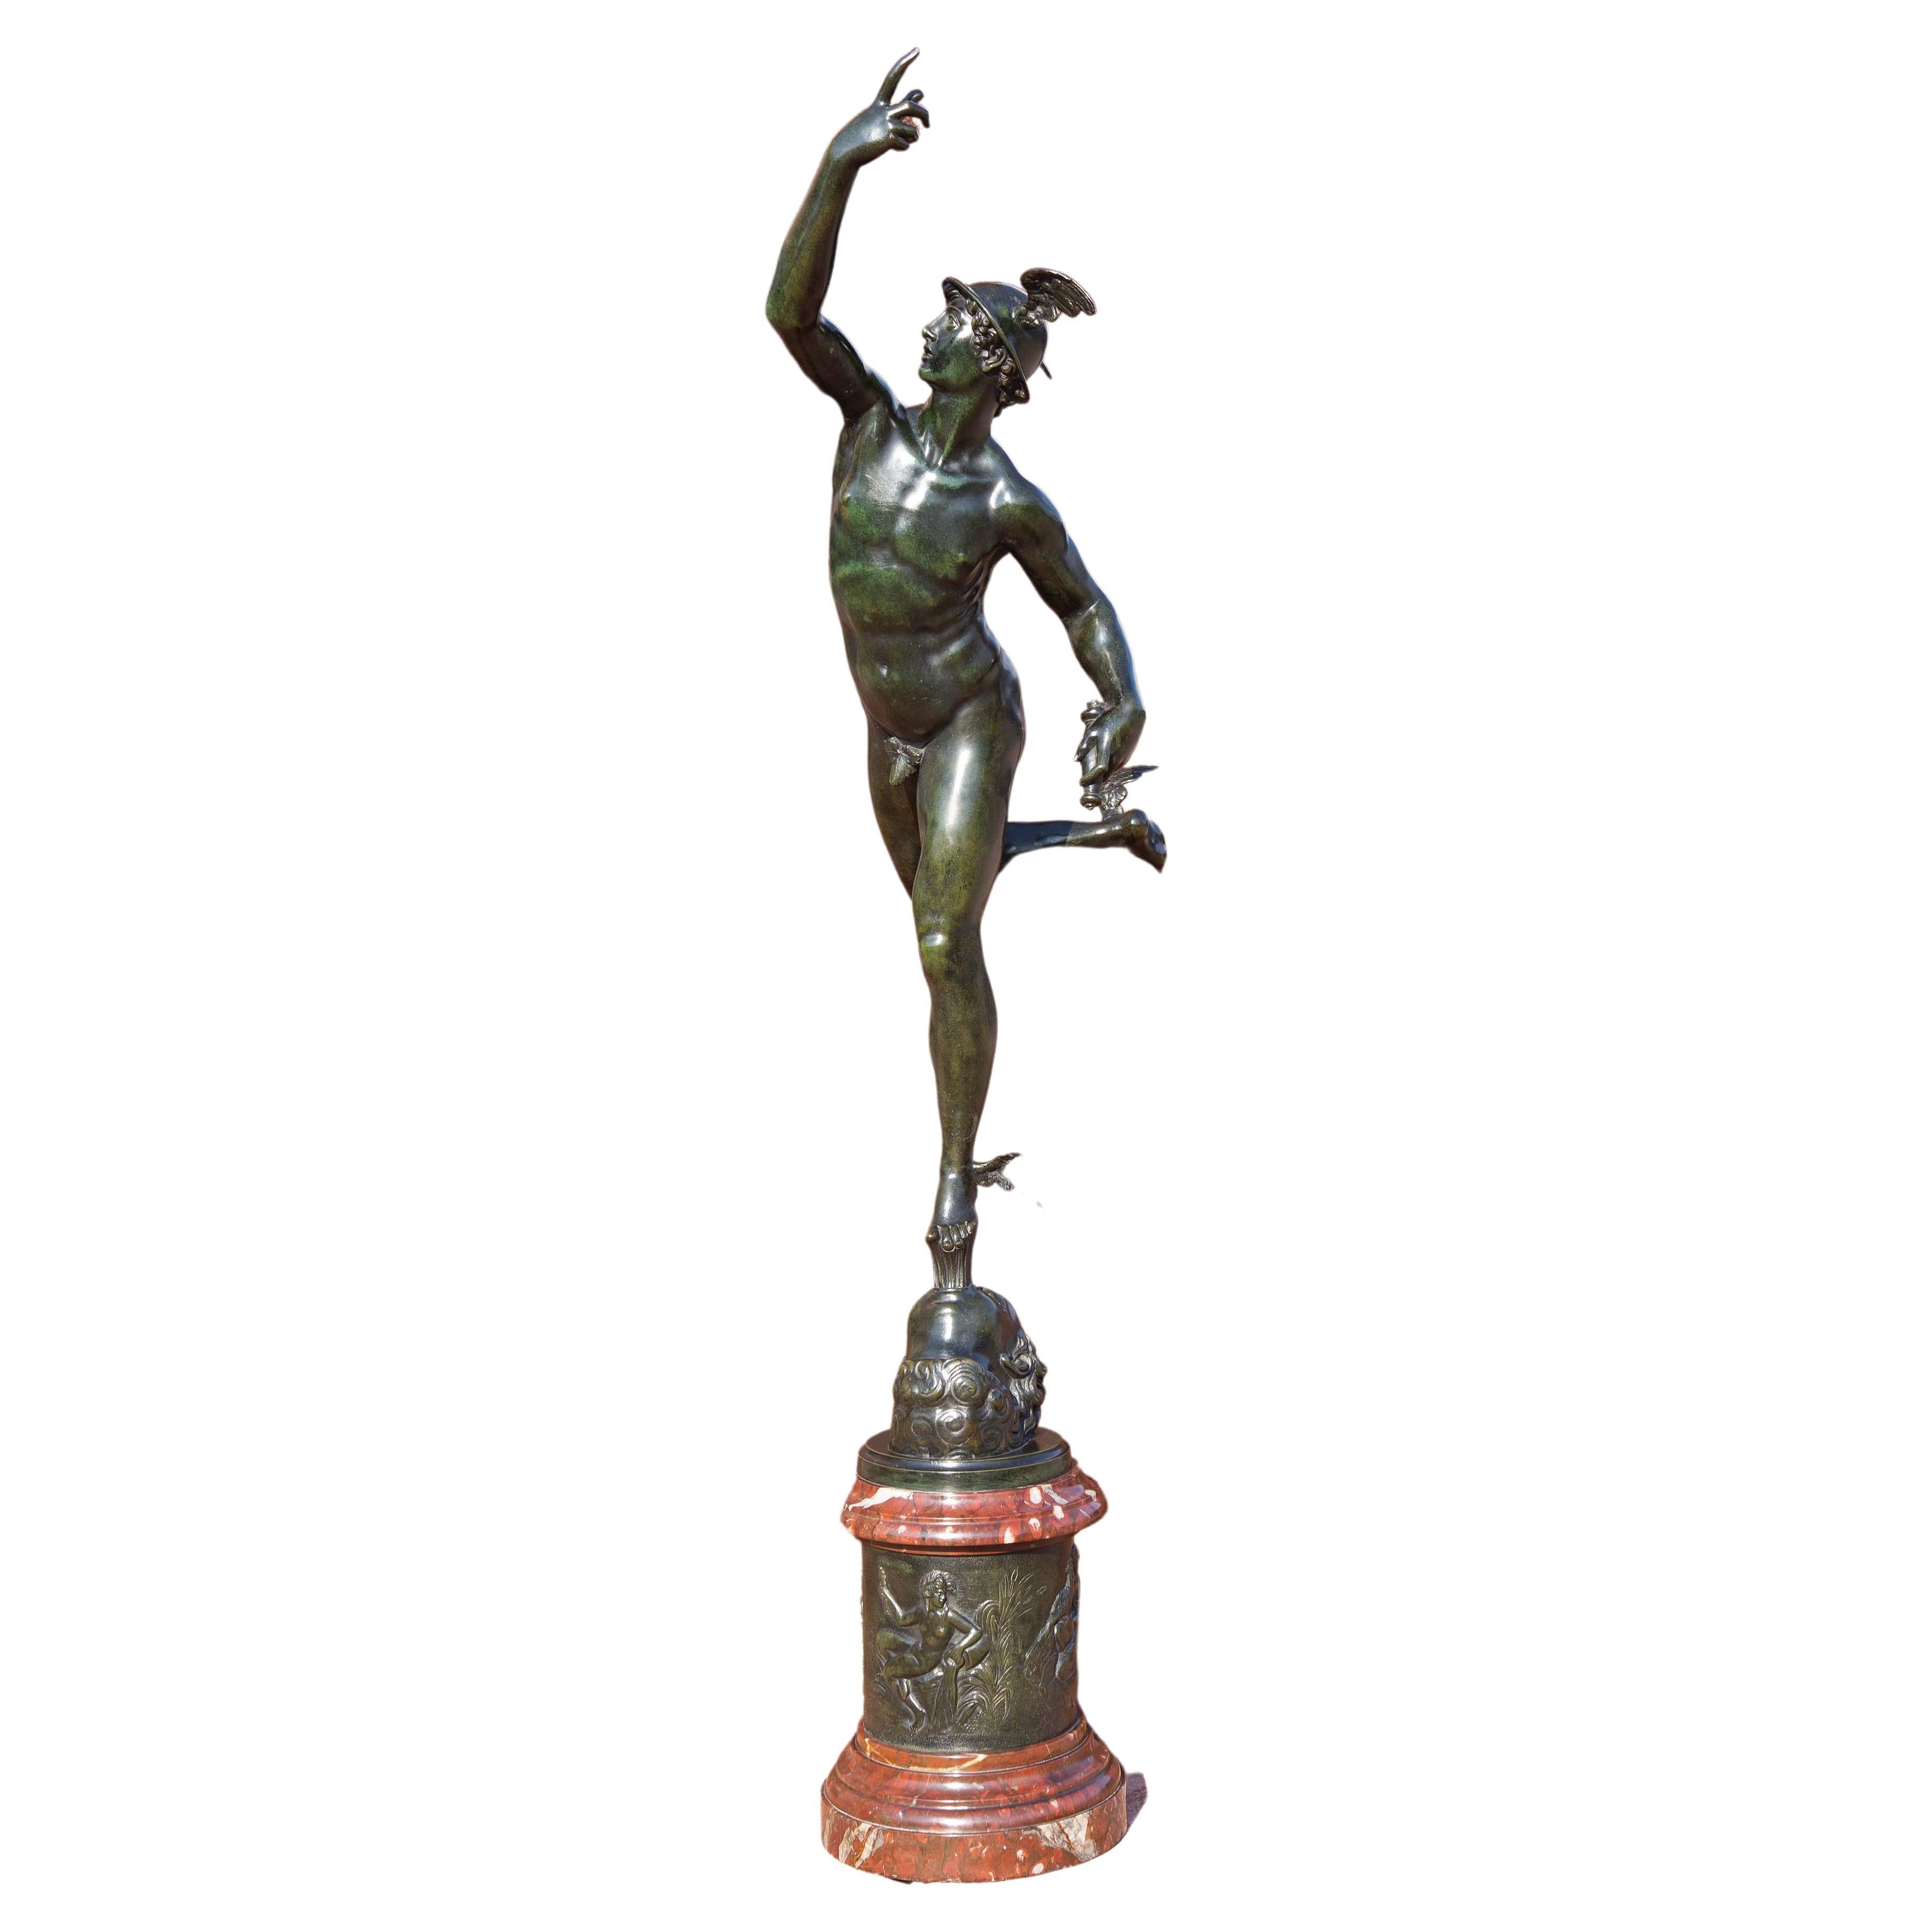 Belle sculpture en bronze du Grand Tour représentant le mercure volant au vent d'après Giambologna. Marbre rouge poli et base attachée en bronze. Socle en marbre vert. Inscrit Jean de Bologne ( Giambologna). Hauteur totale 8'7